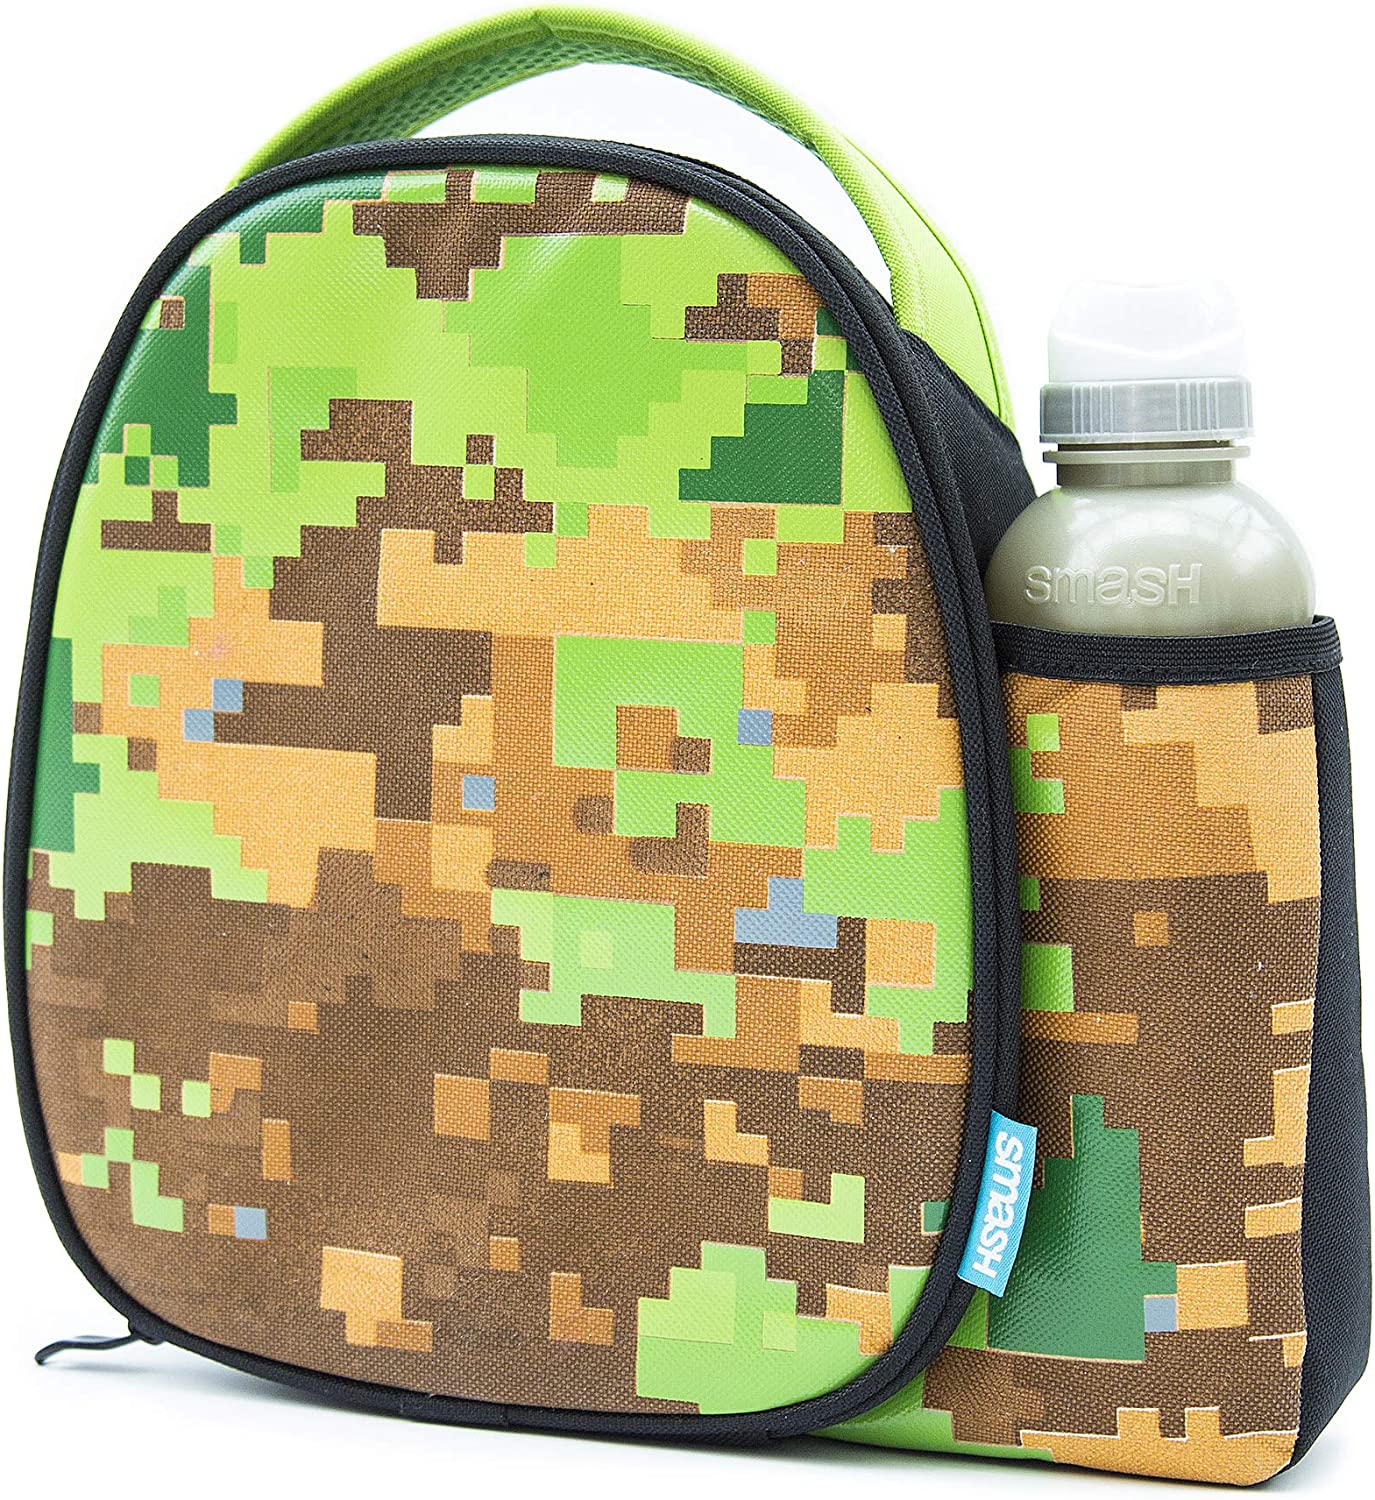 Smash isolada e garrafa de Lancheira 500 ml, tecido, camuflagem pixelizada, 8,5 cm x 25,5 cm x 25 cm